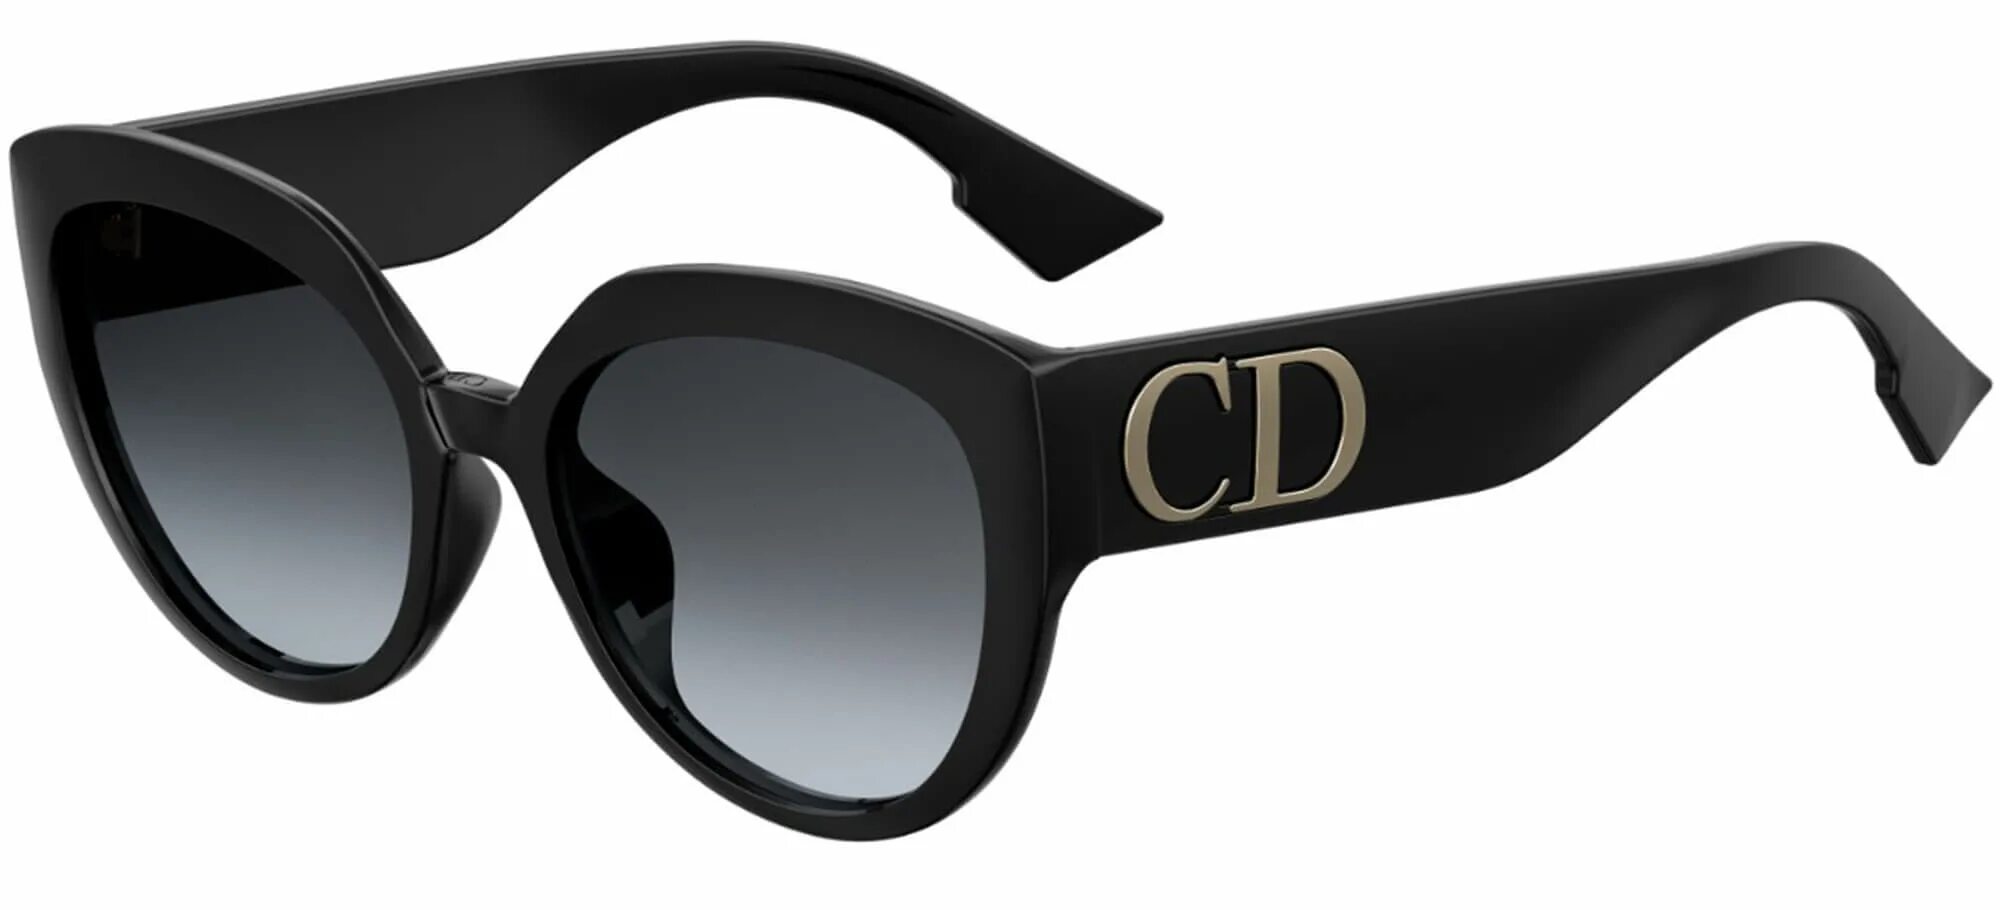 Очки диор 807. Очки Christian Dior женские солнцезащитные. Christian Dior очки солнцезащитные 30montaigne 807. Оправа Christian Dior.